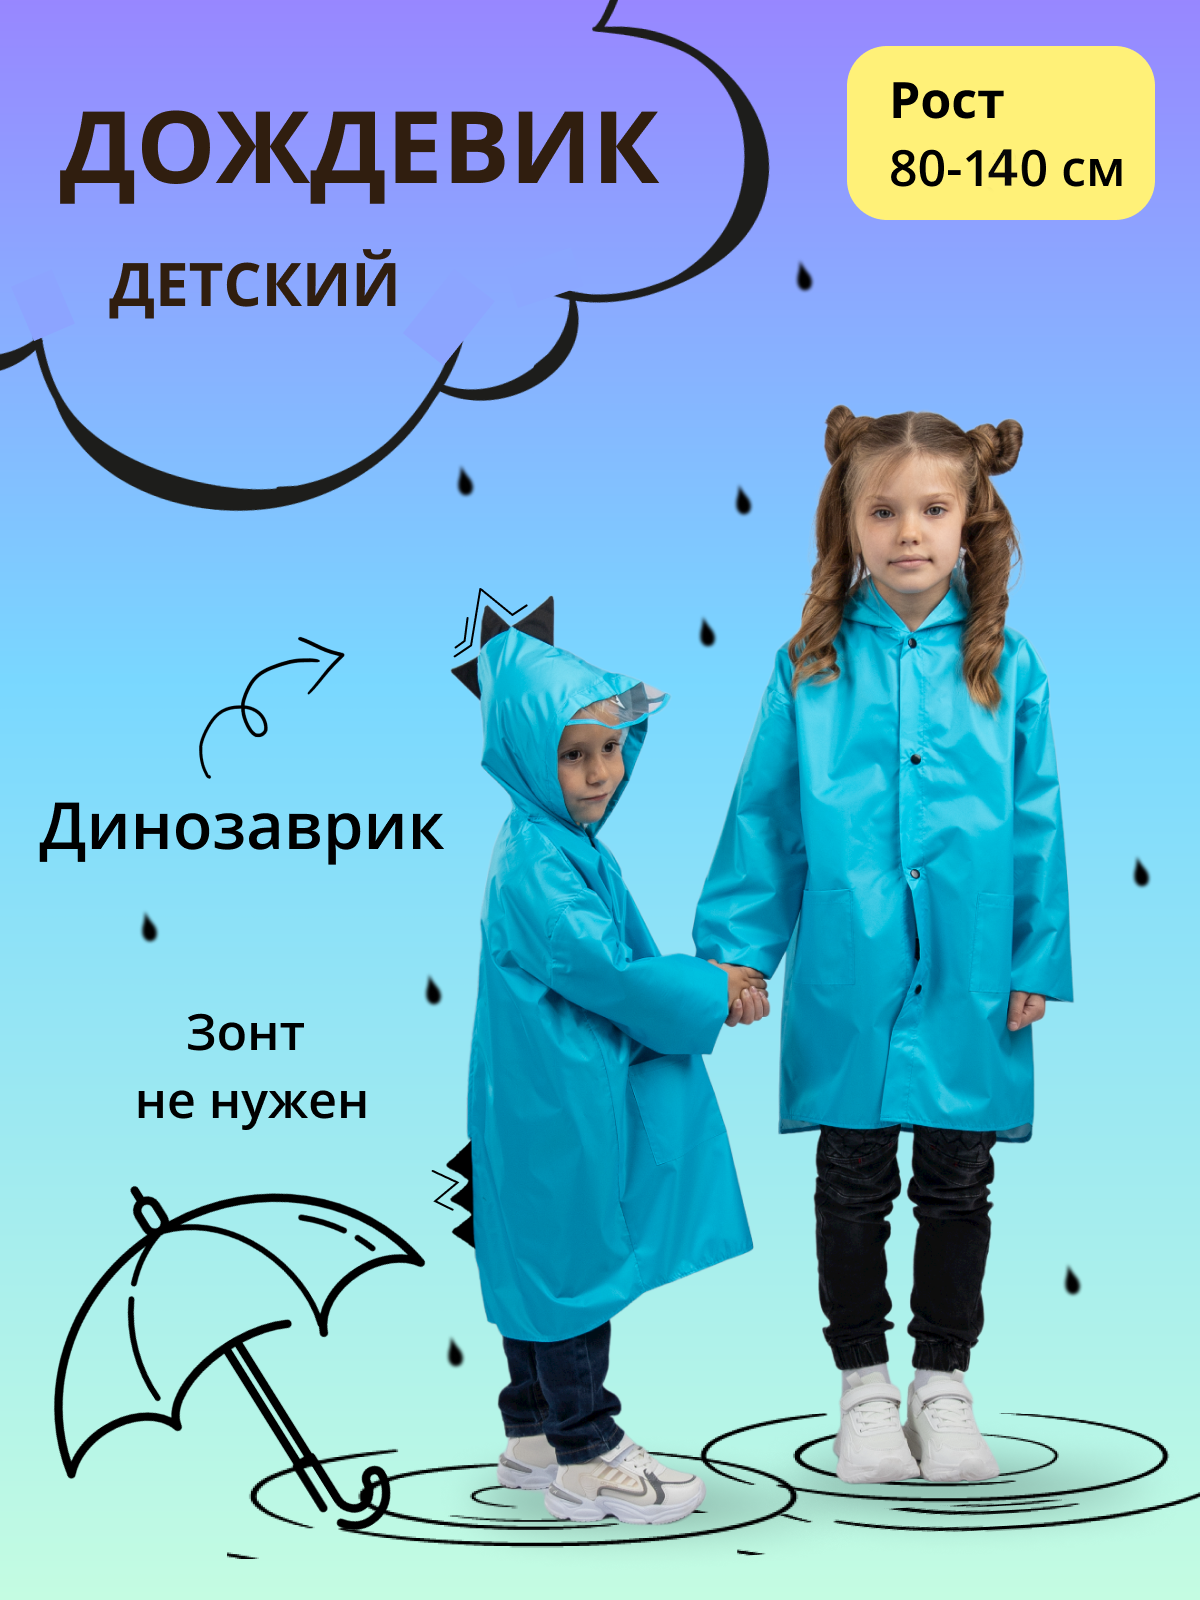 Дождевик детский Под дождем 122905588, голубой, 116